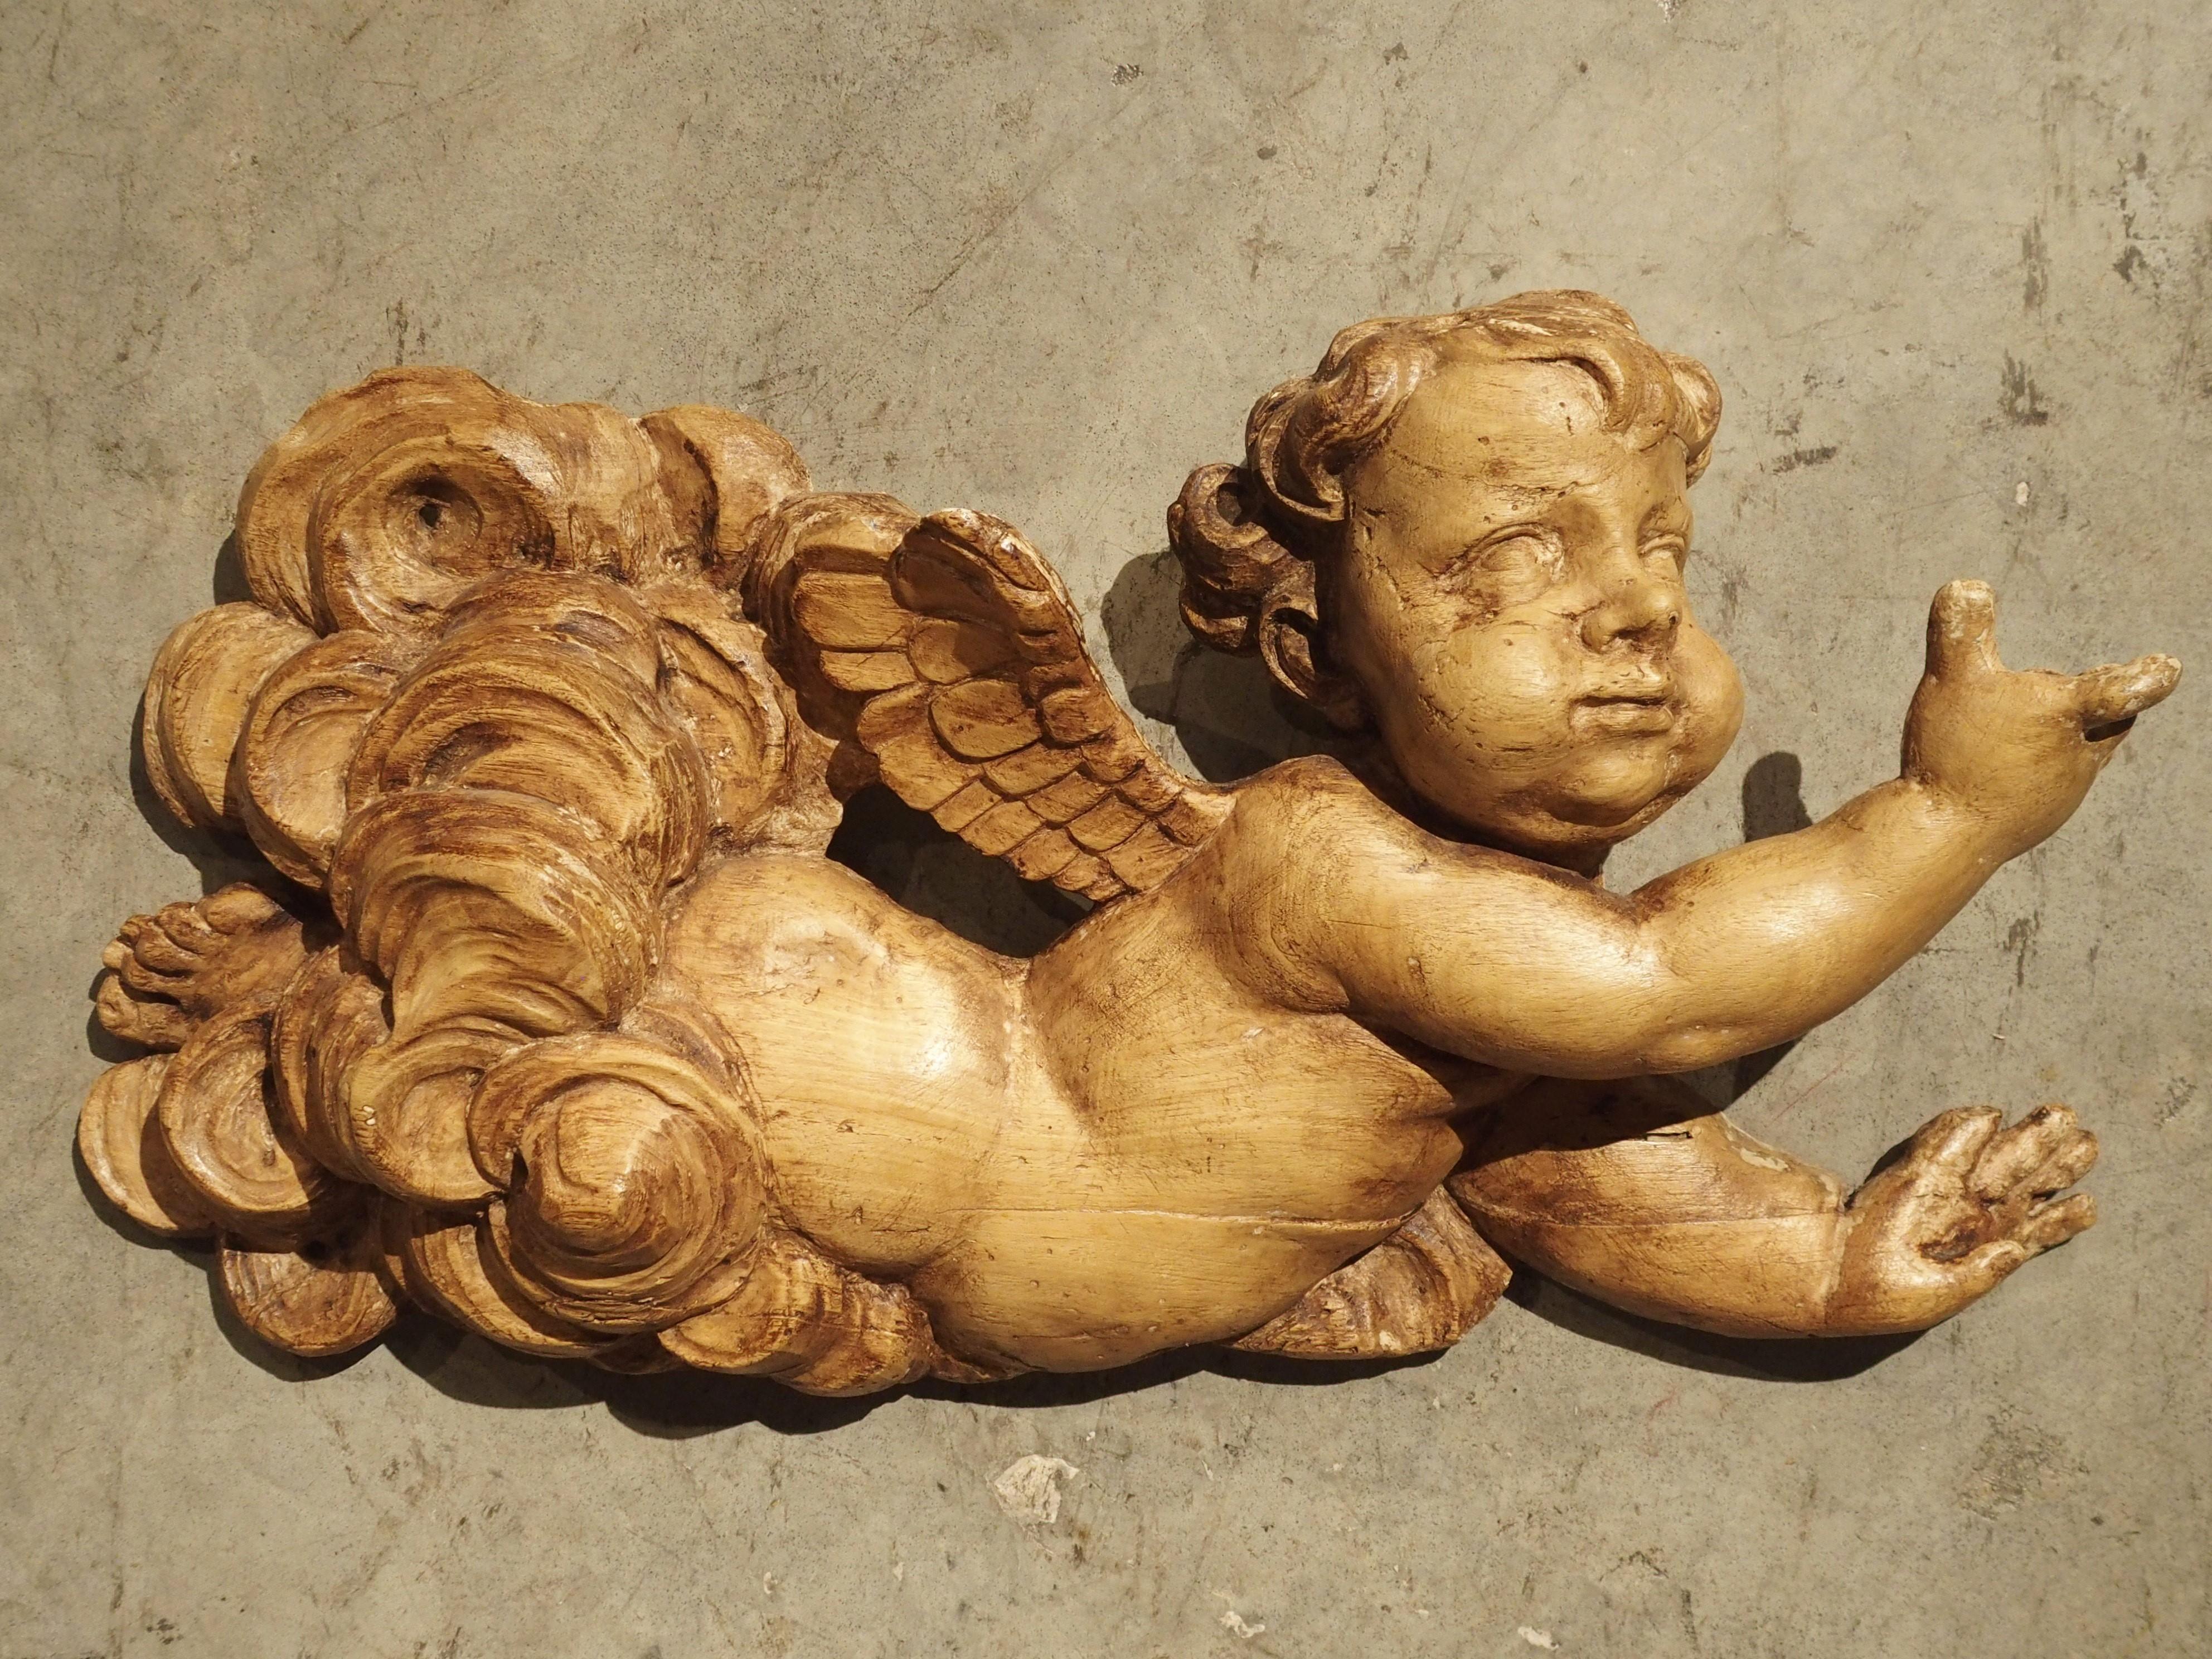 Diese leichte und kunstvoll geschnitzte Skulptur stellt einen kleinen, geflügelten Cherub dar, der durch Wolkenfetzen fliegt. Die Skulptur wurde in den 1700er Jahren in Frankreich handgeschnitzt. Der Cherub war wahrscheinlich ursprünglich Teil eines